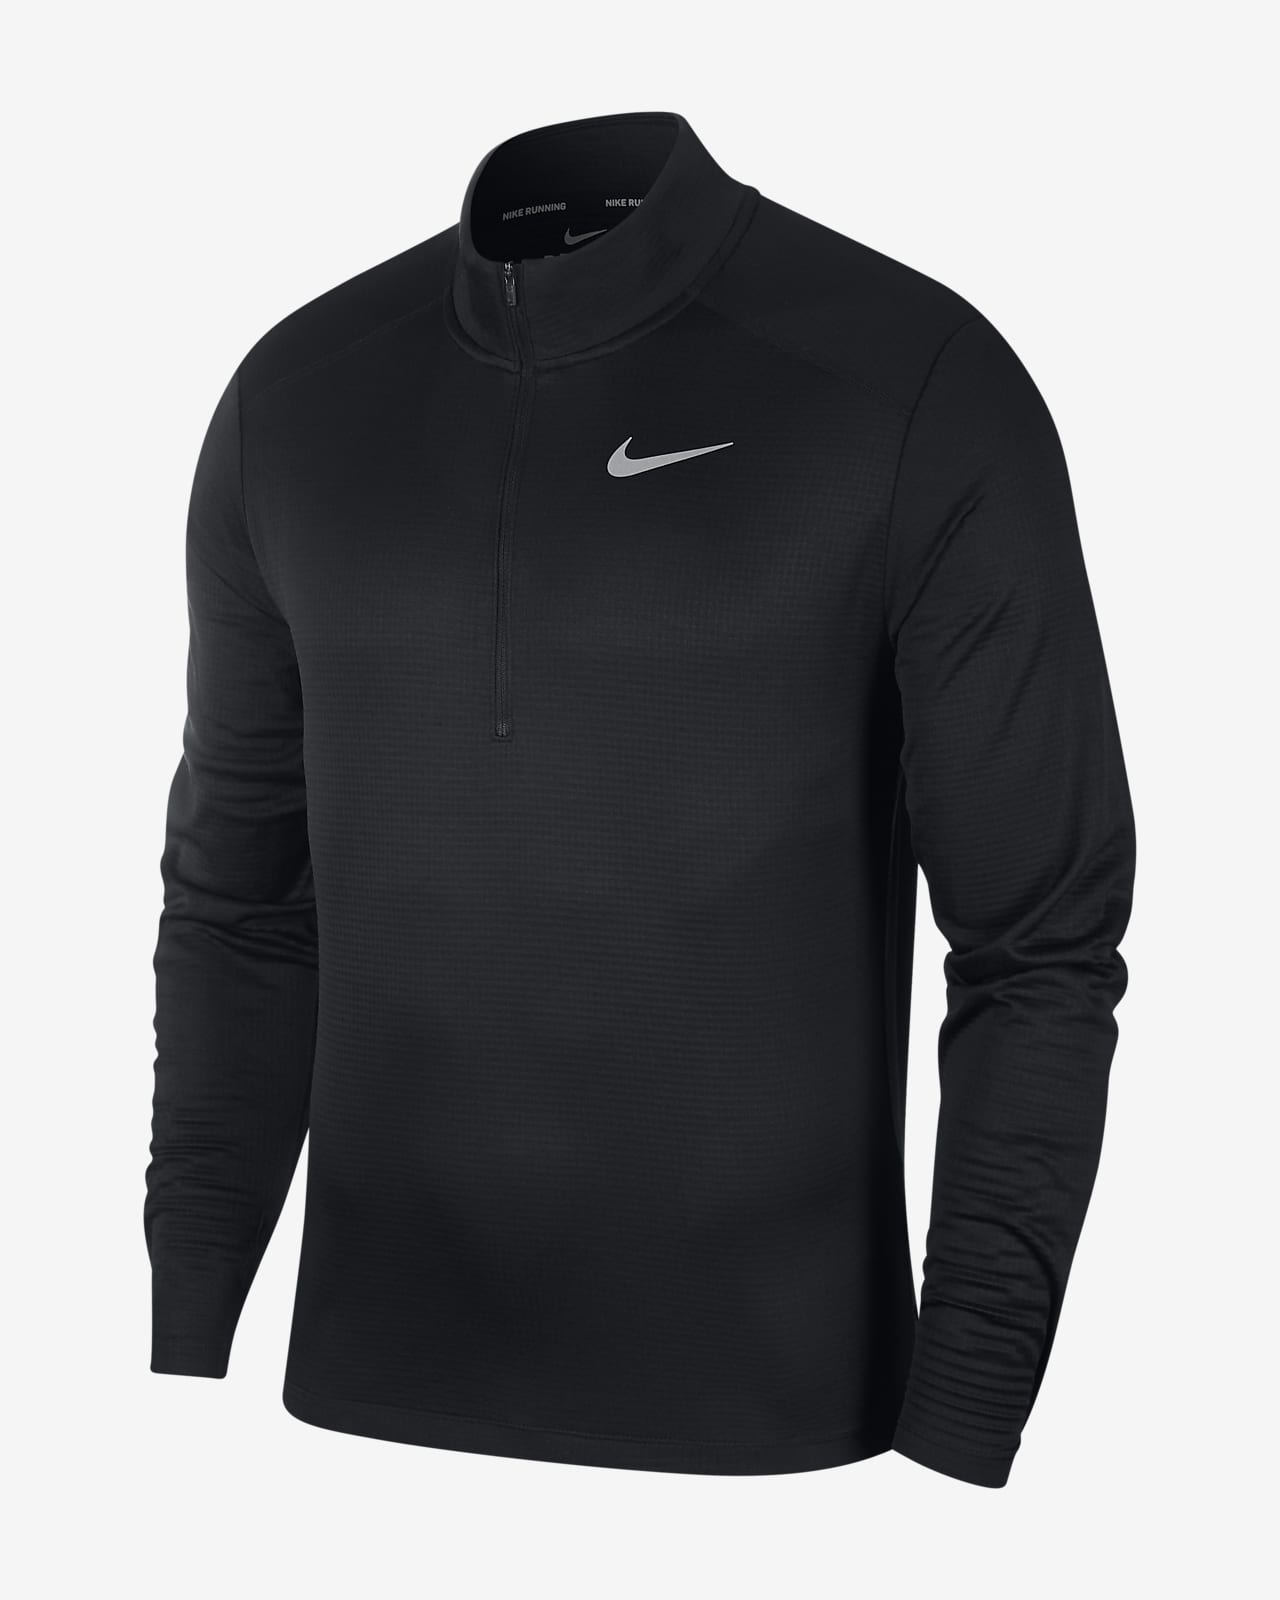 Ανδρική μπλούζα για τρέξιμο με φερμουάρ στο μισό μήκος Nike Pacer